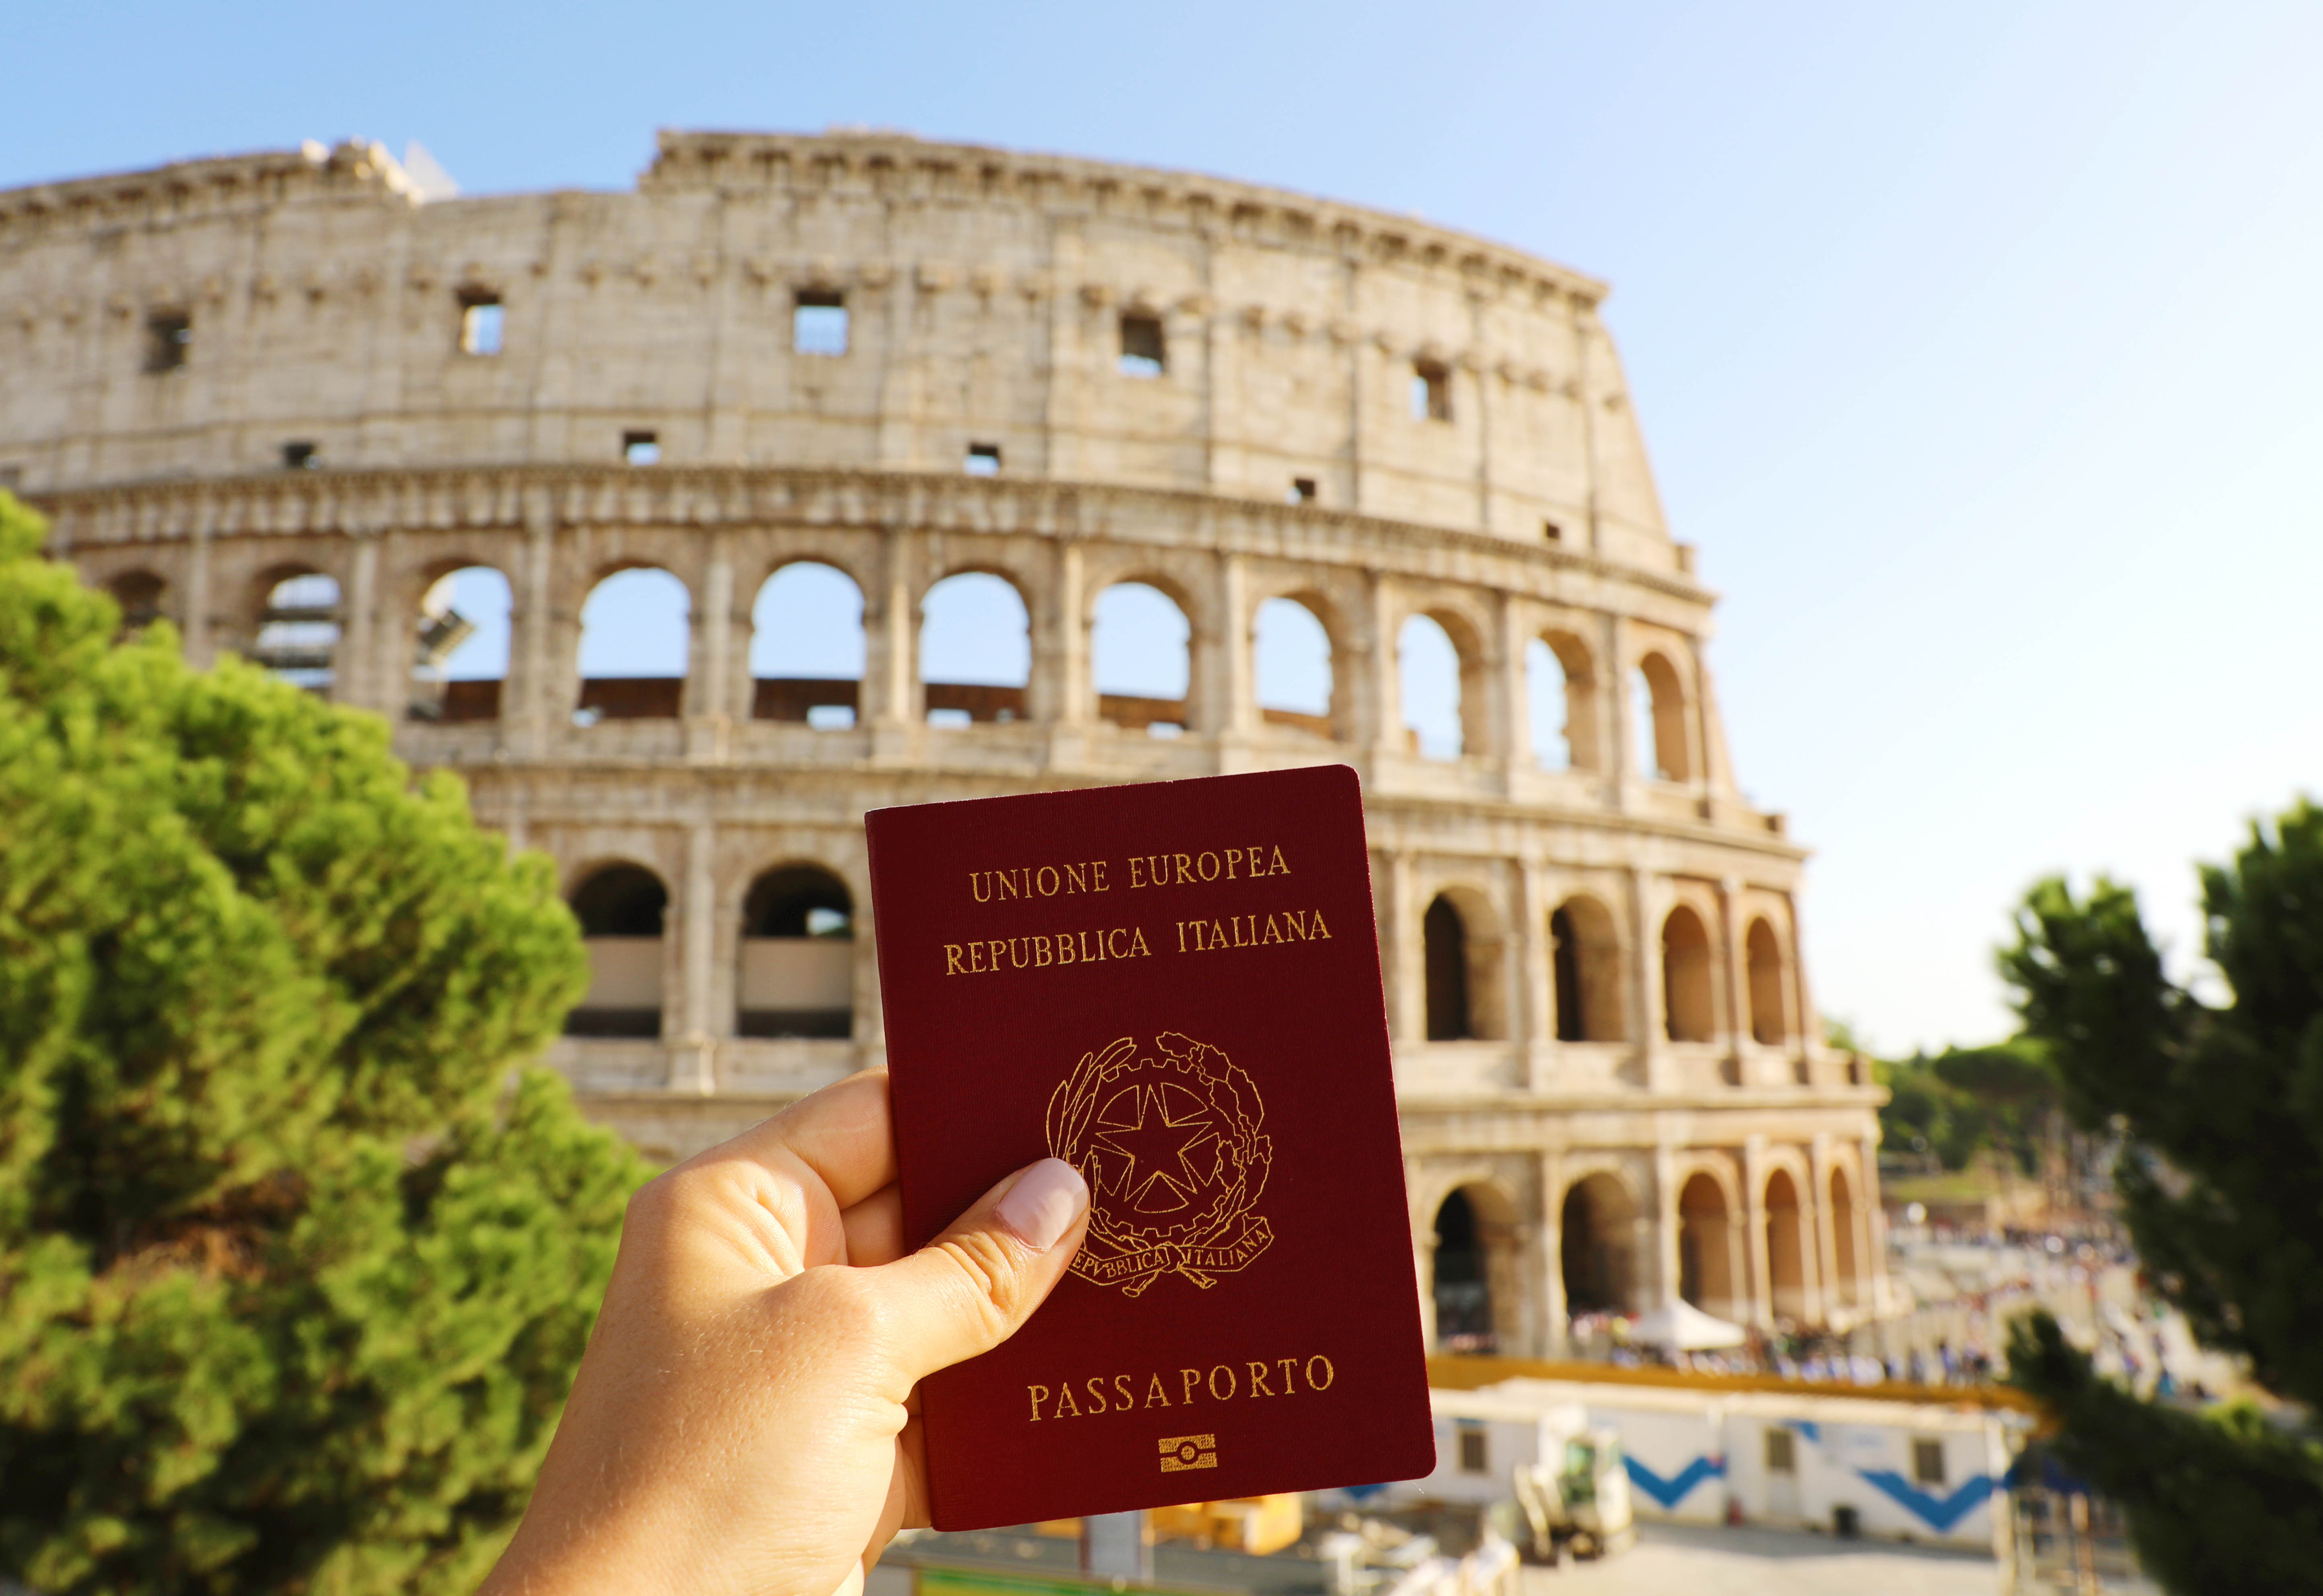 Паспорт Италии, гражданство которой можно получить